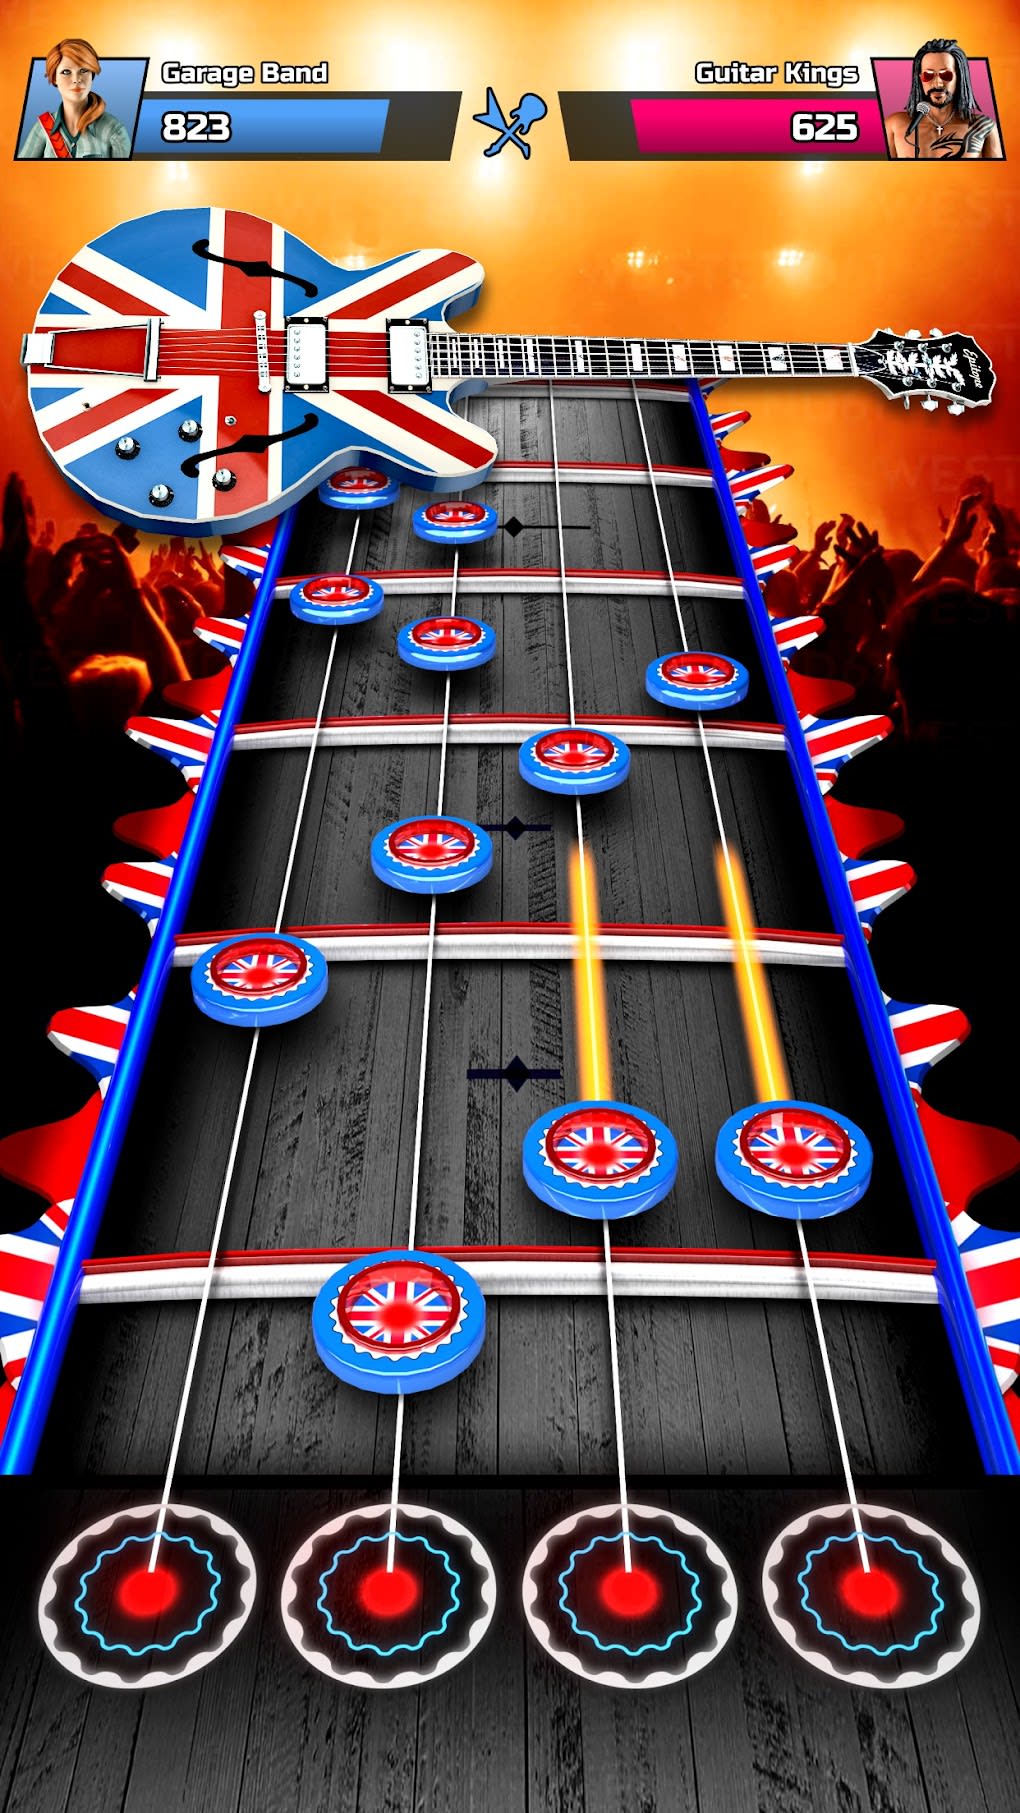 App do Dia - Guitar Band - Solo Hero